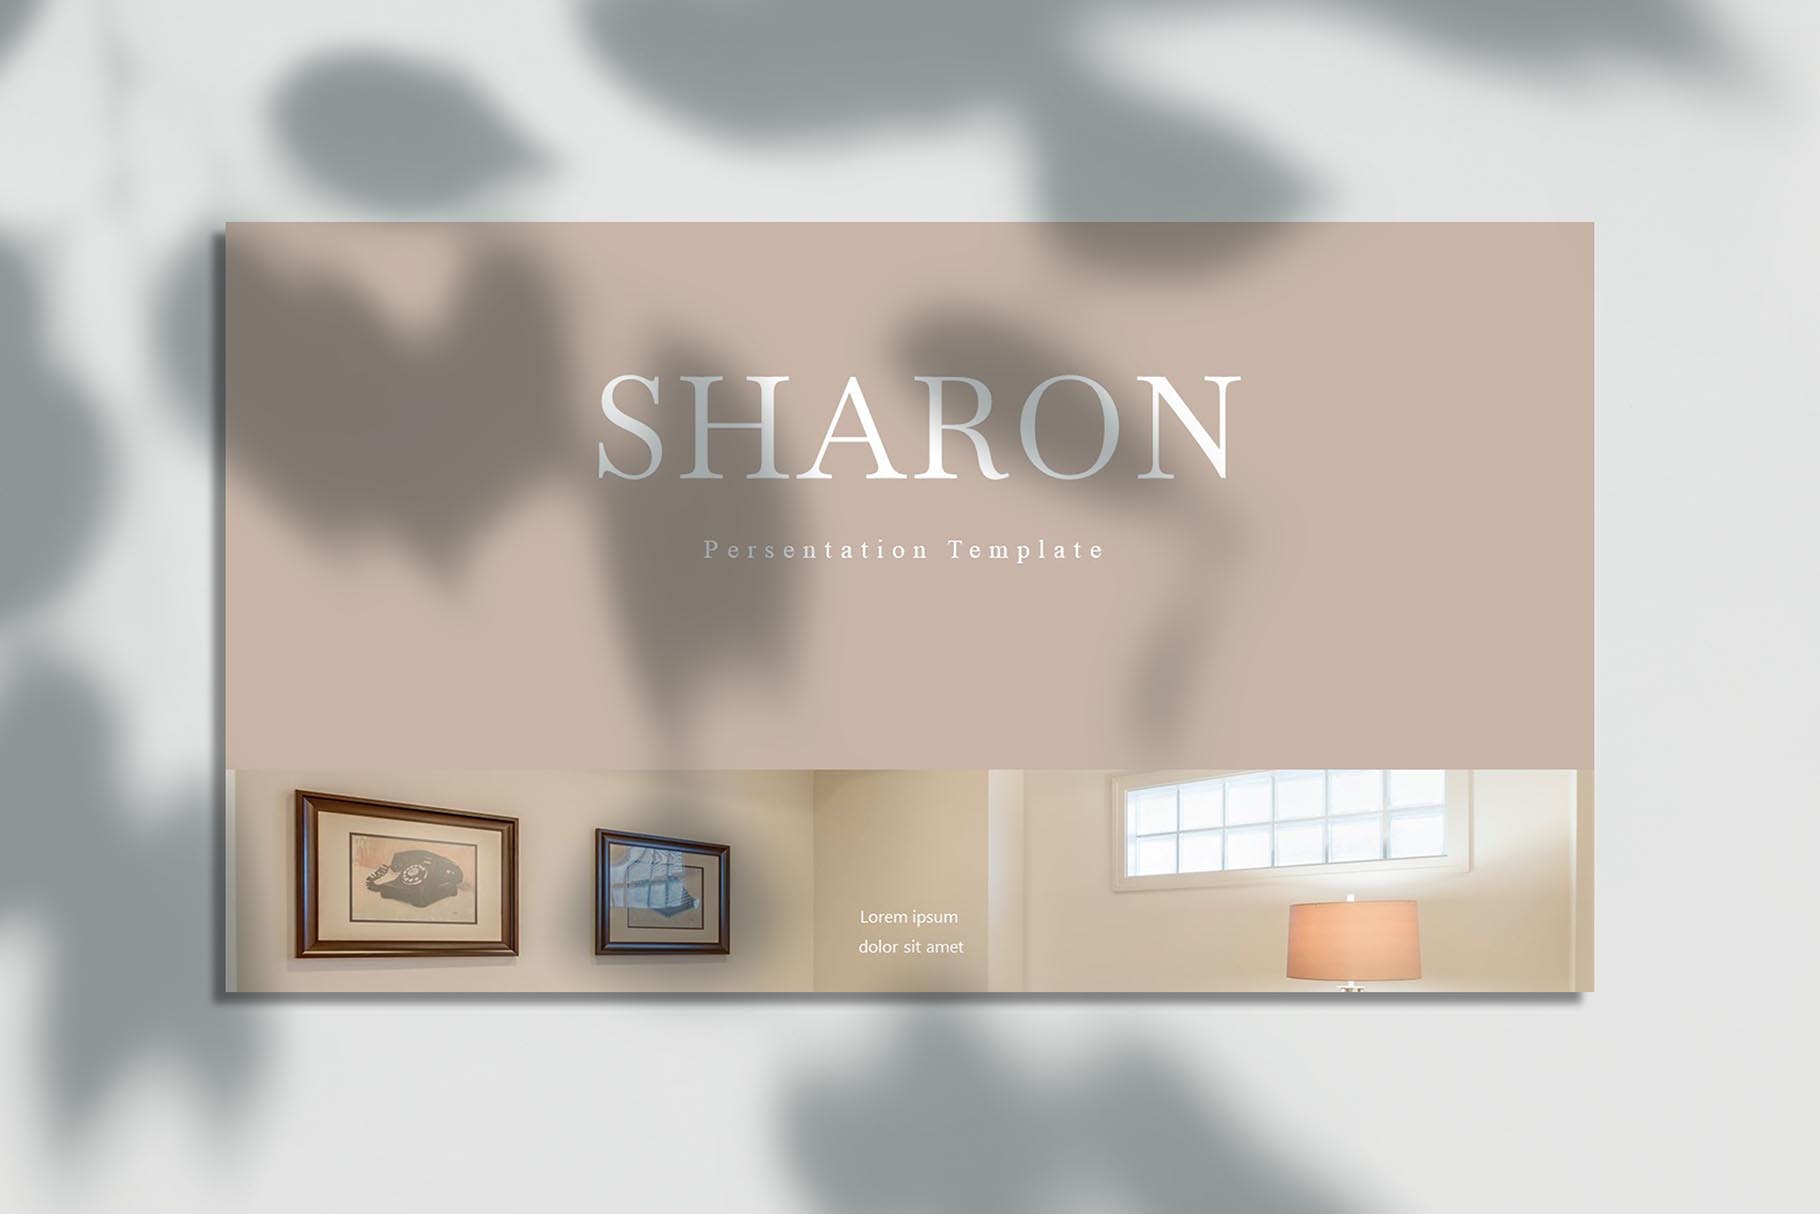 欧美风简洁时尚品牌产品展示PPT模板 Sharon – Powerpoint Template设计素材模板